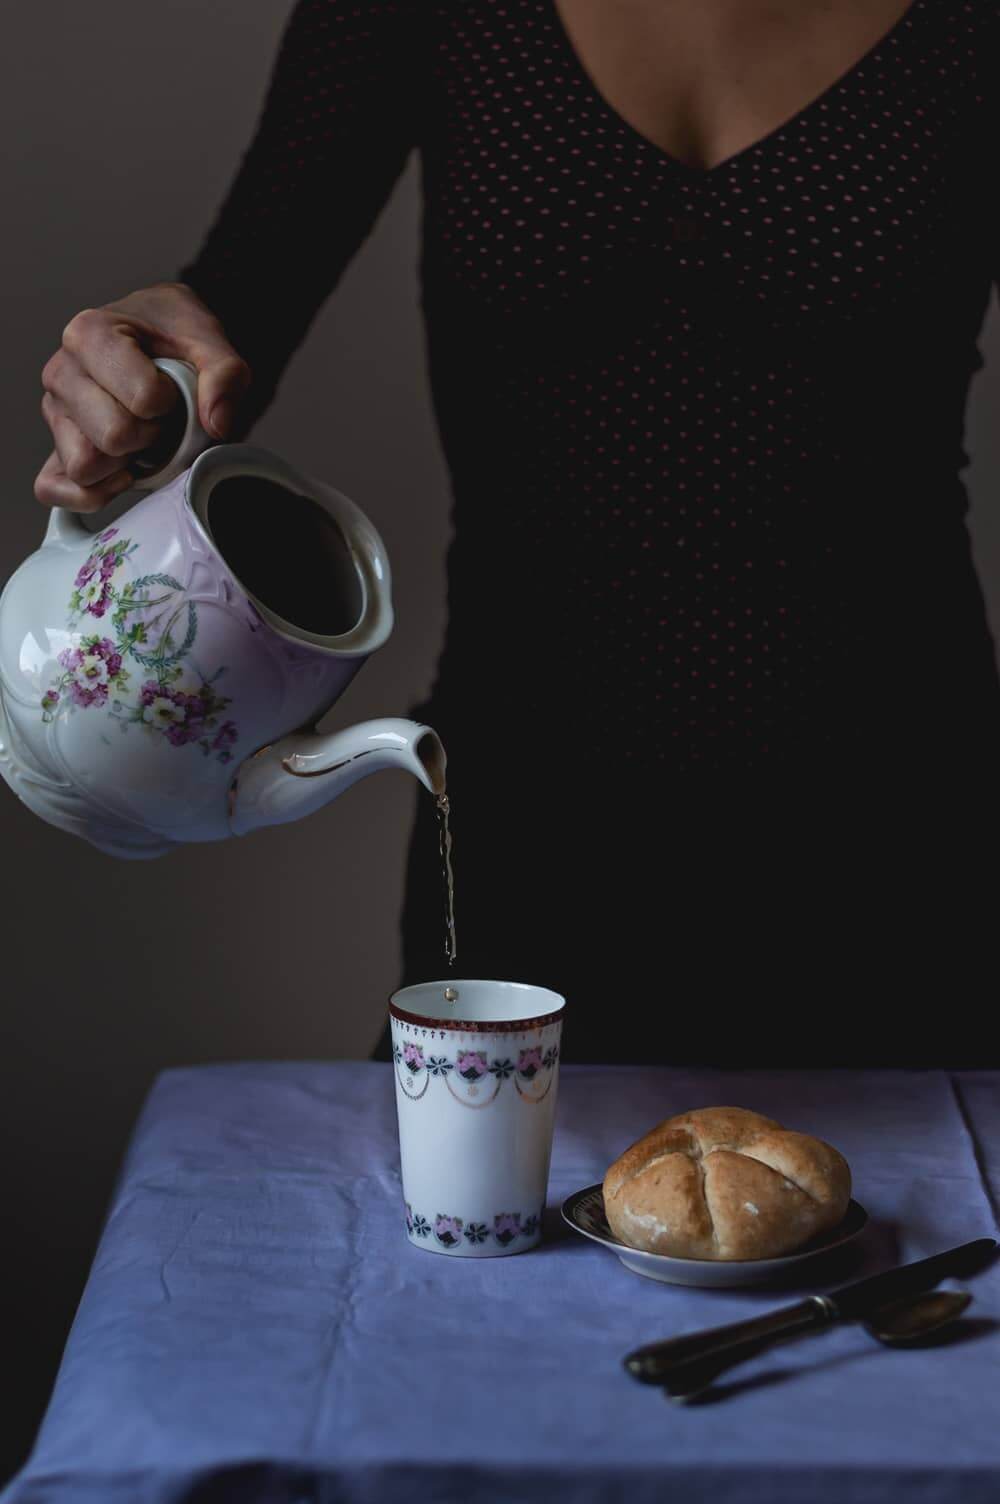 Una mesa esta cubierta con una mantel de color lila. Una persona está echando té recién hecho a una taza. Al lado de la taza en un plato pequeño está el Panecillo de Kaiser.